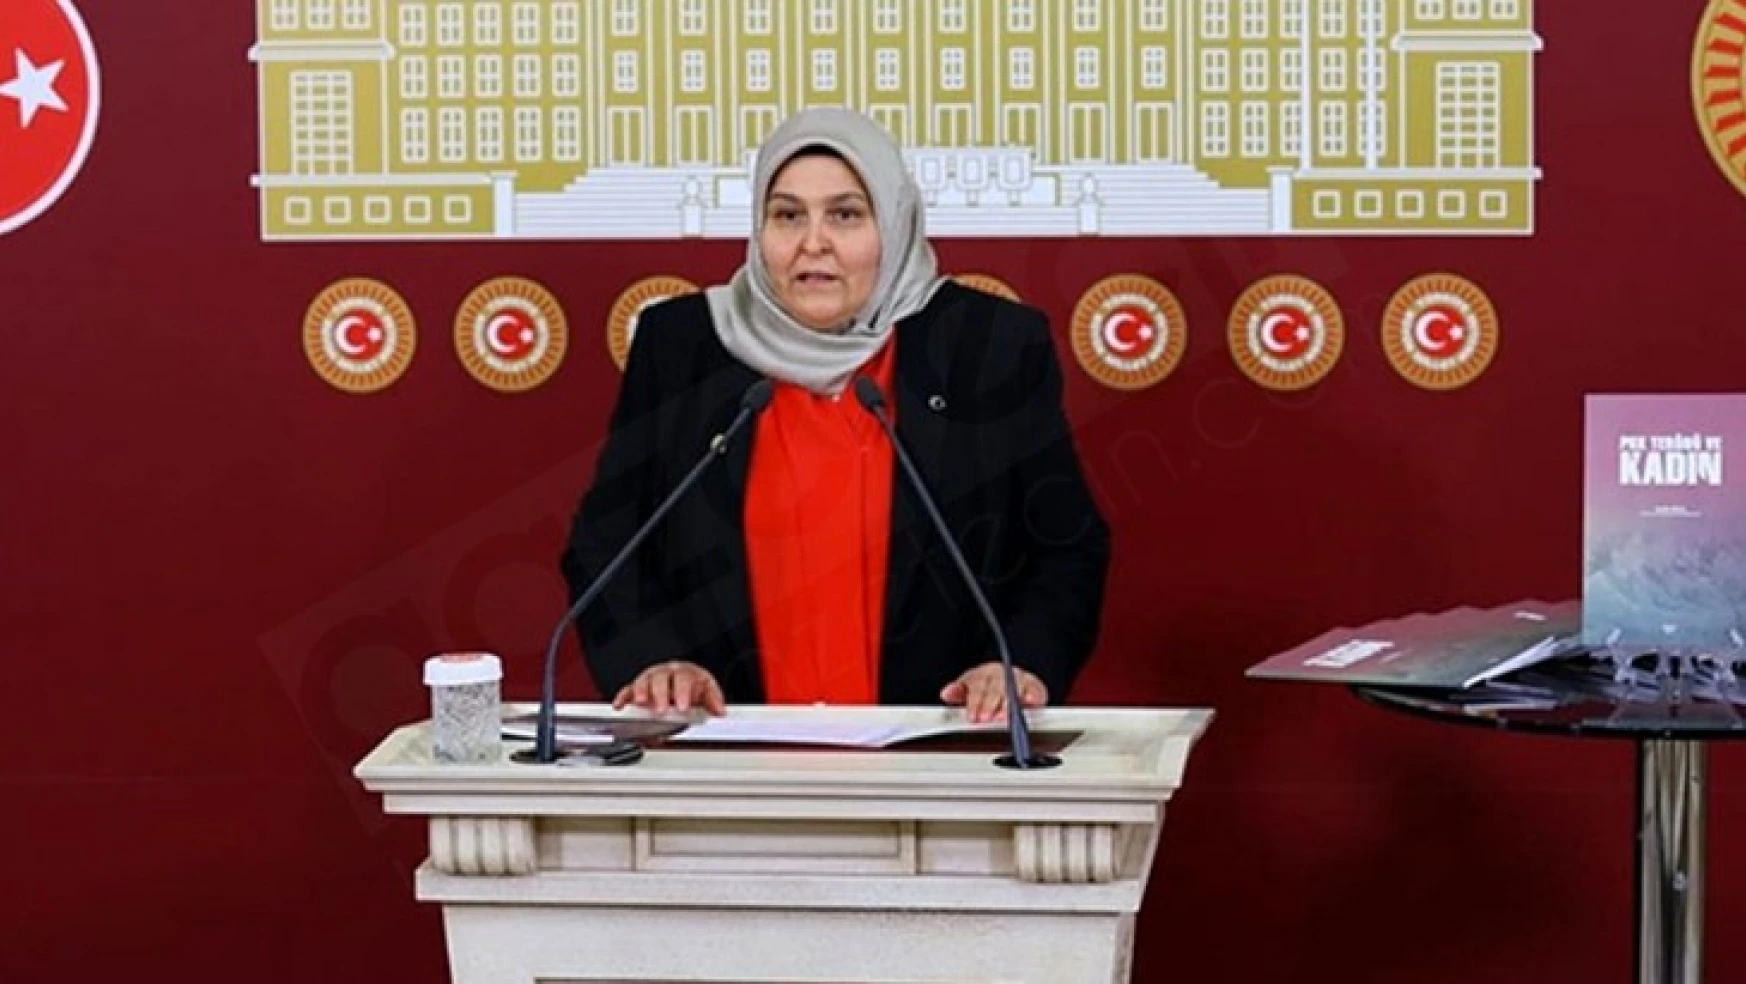 AK Parti Milletvekili Öçal: Medya, demokrasilerin vazgeçilmez bir unsurudur